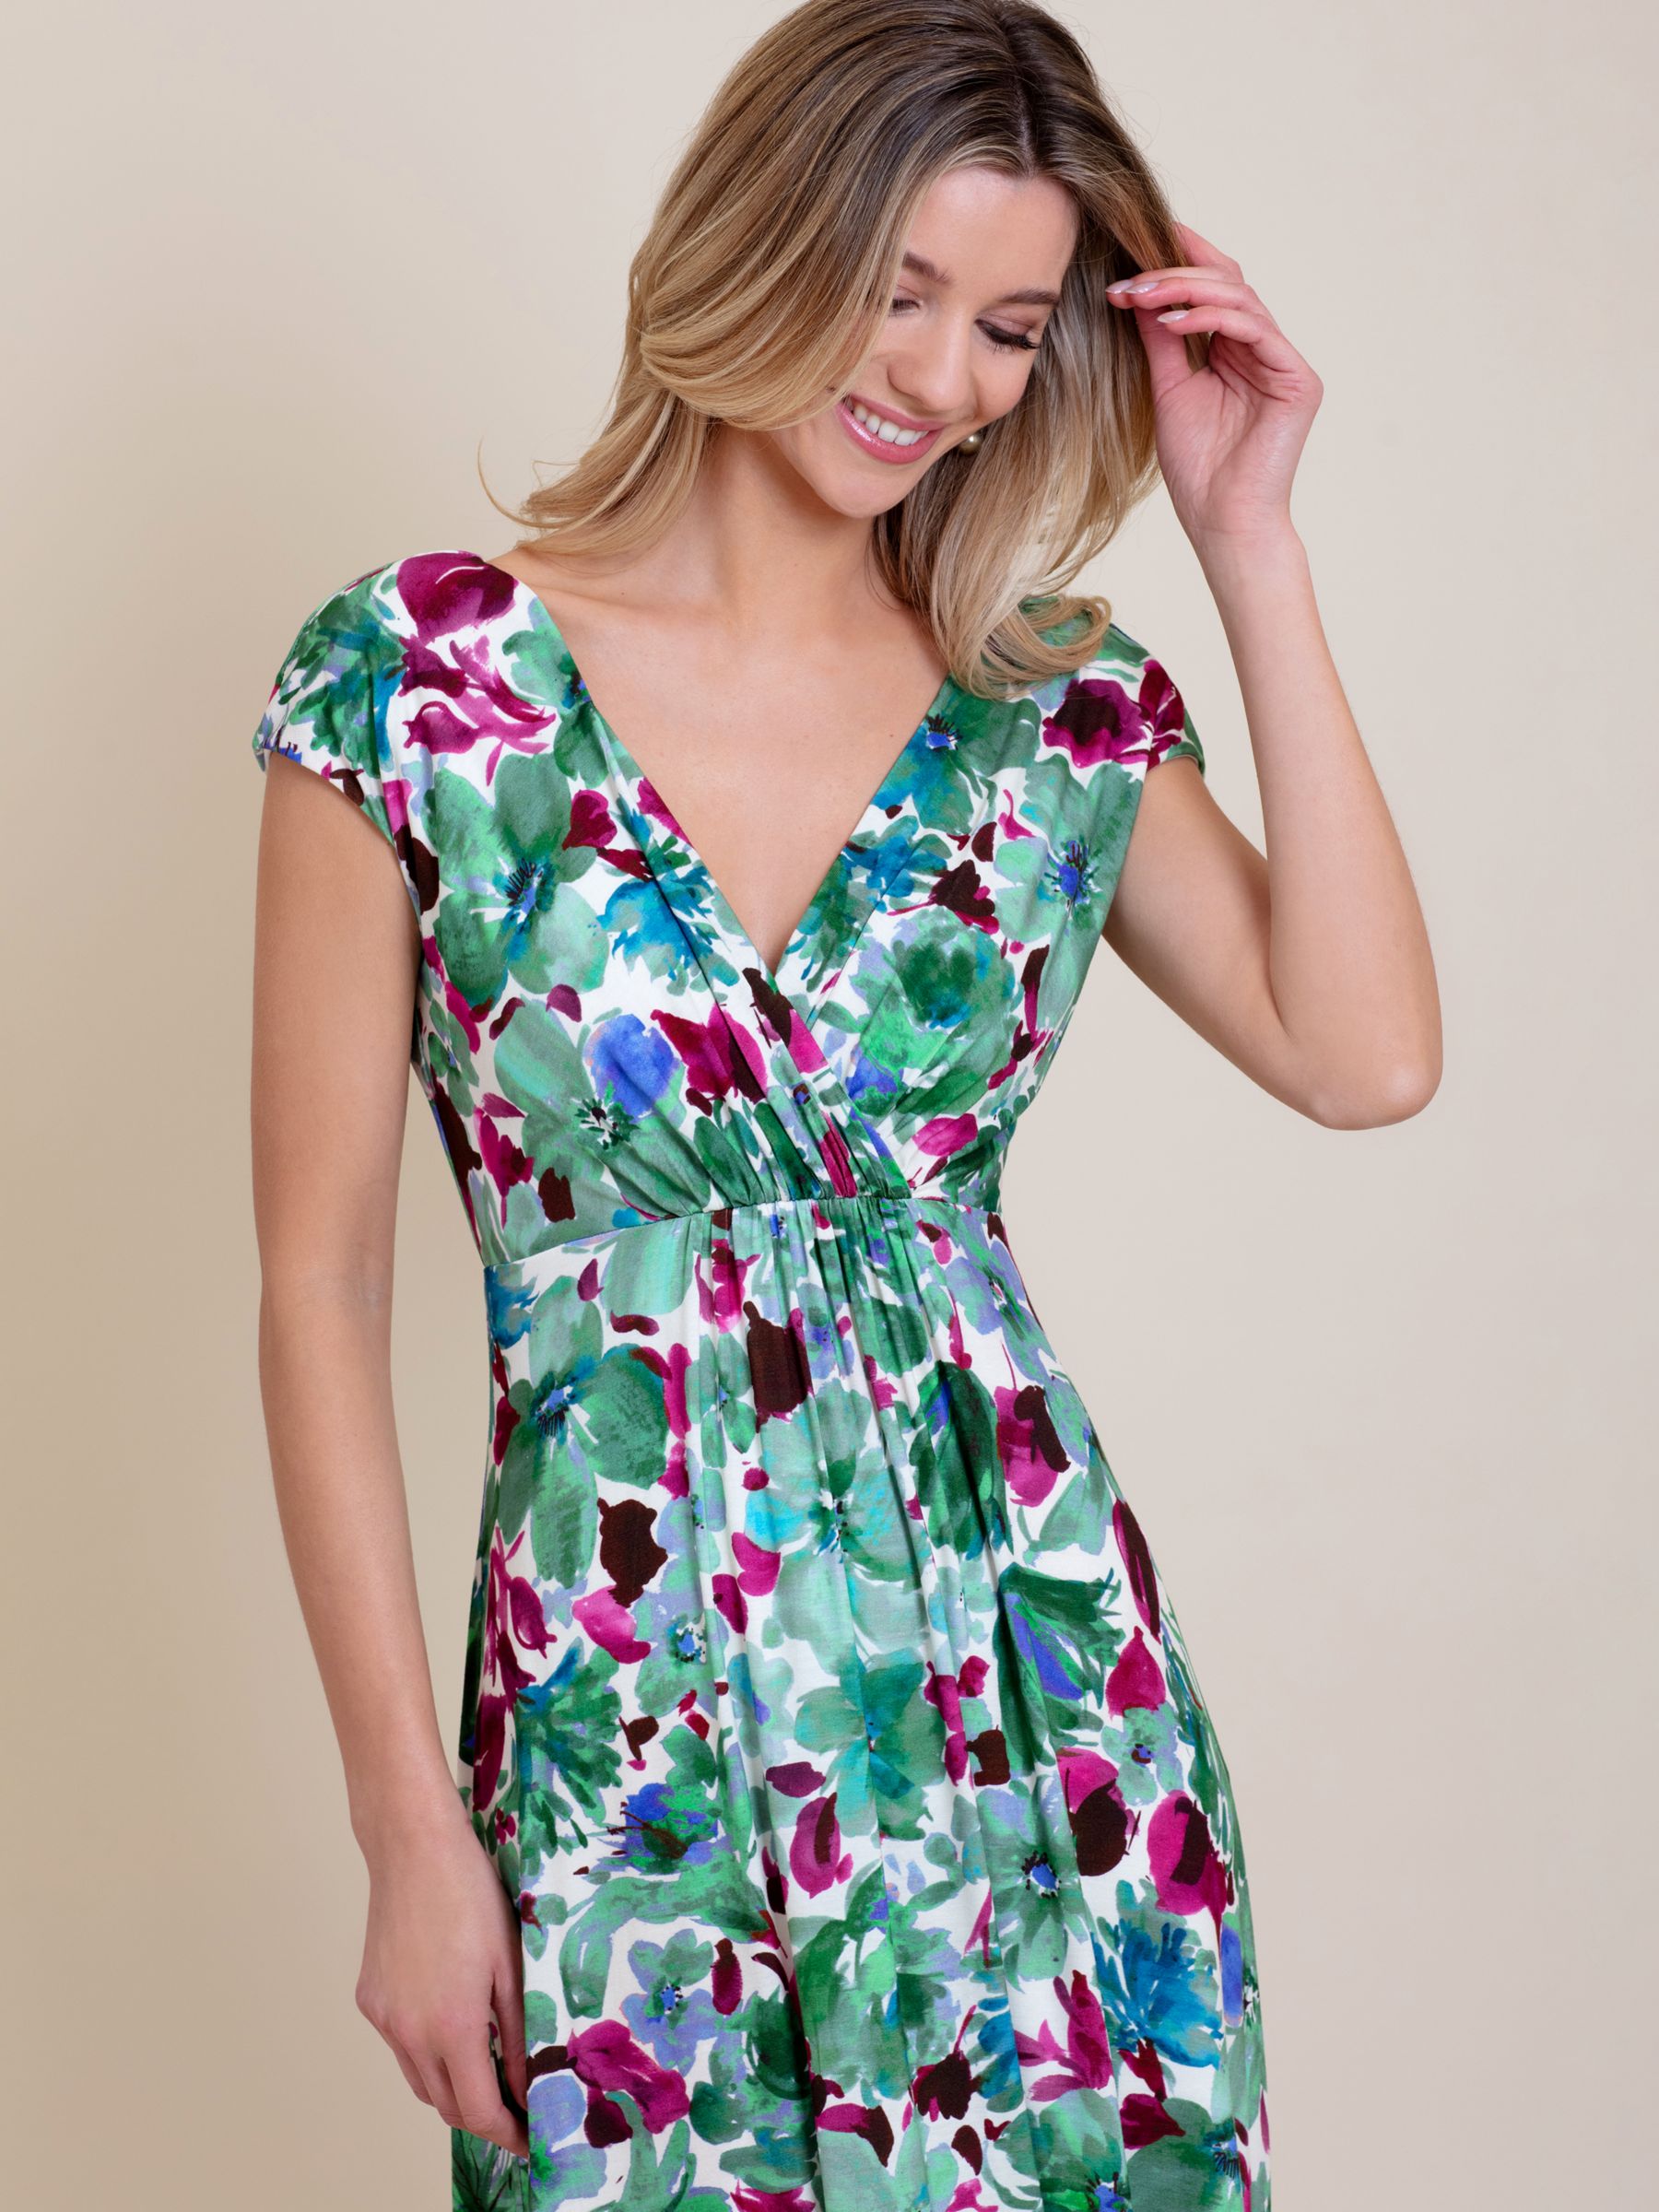 Alie Street Sophia Floral Maxi Dress, Multi, 18-20